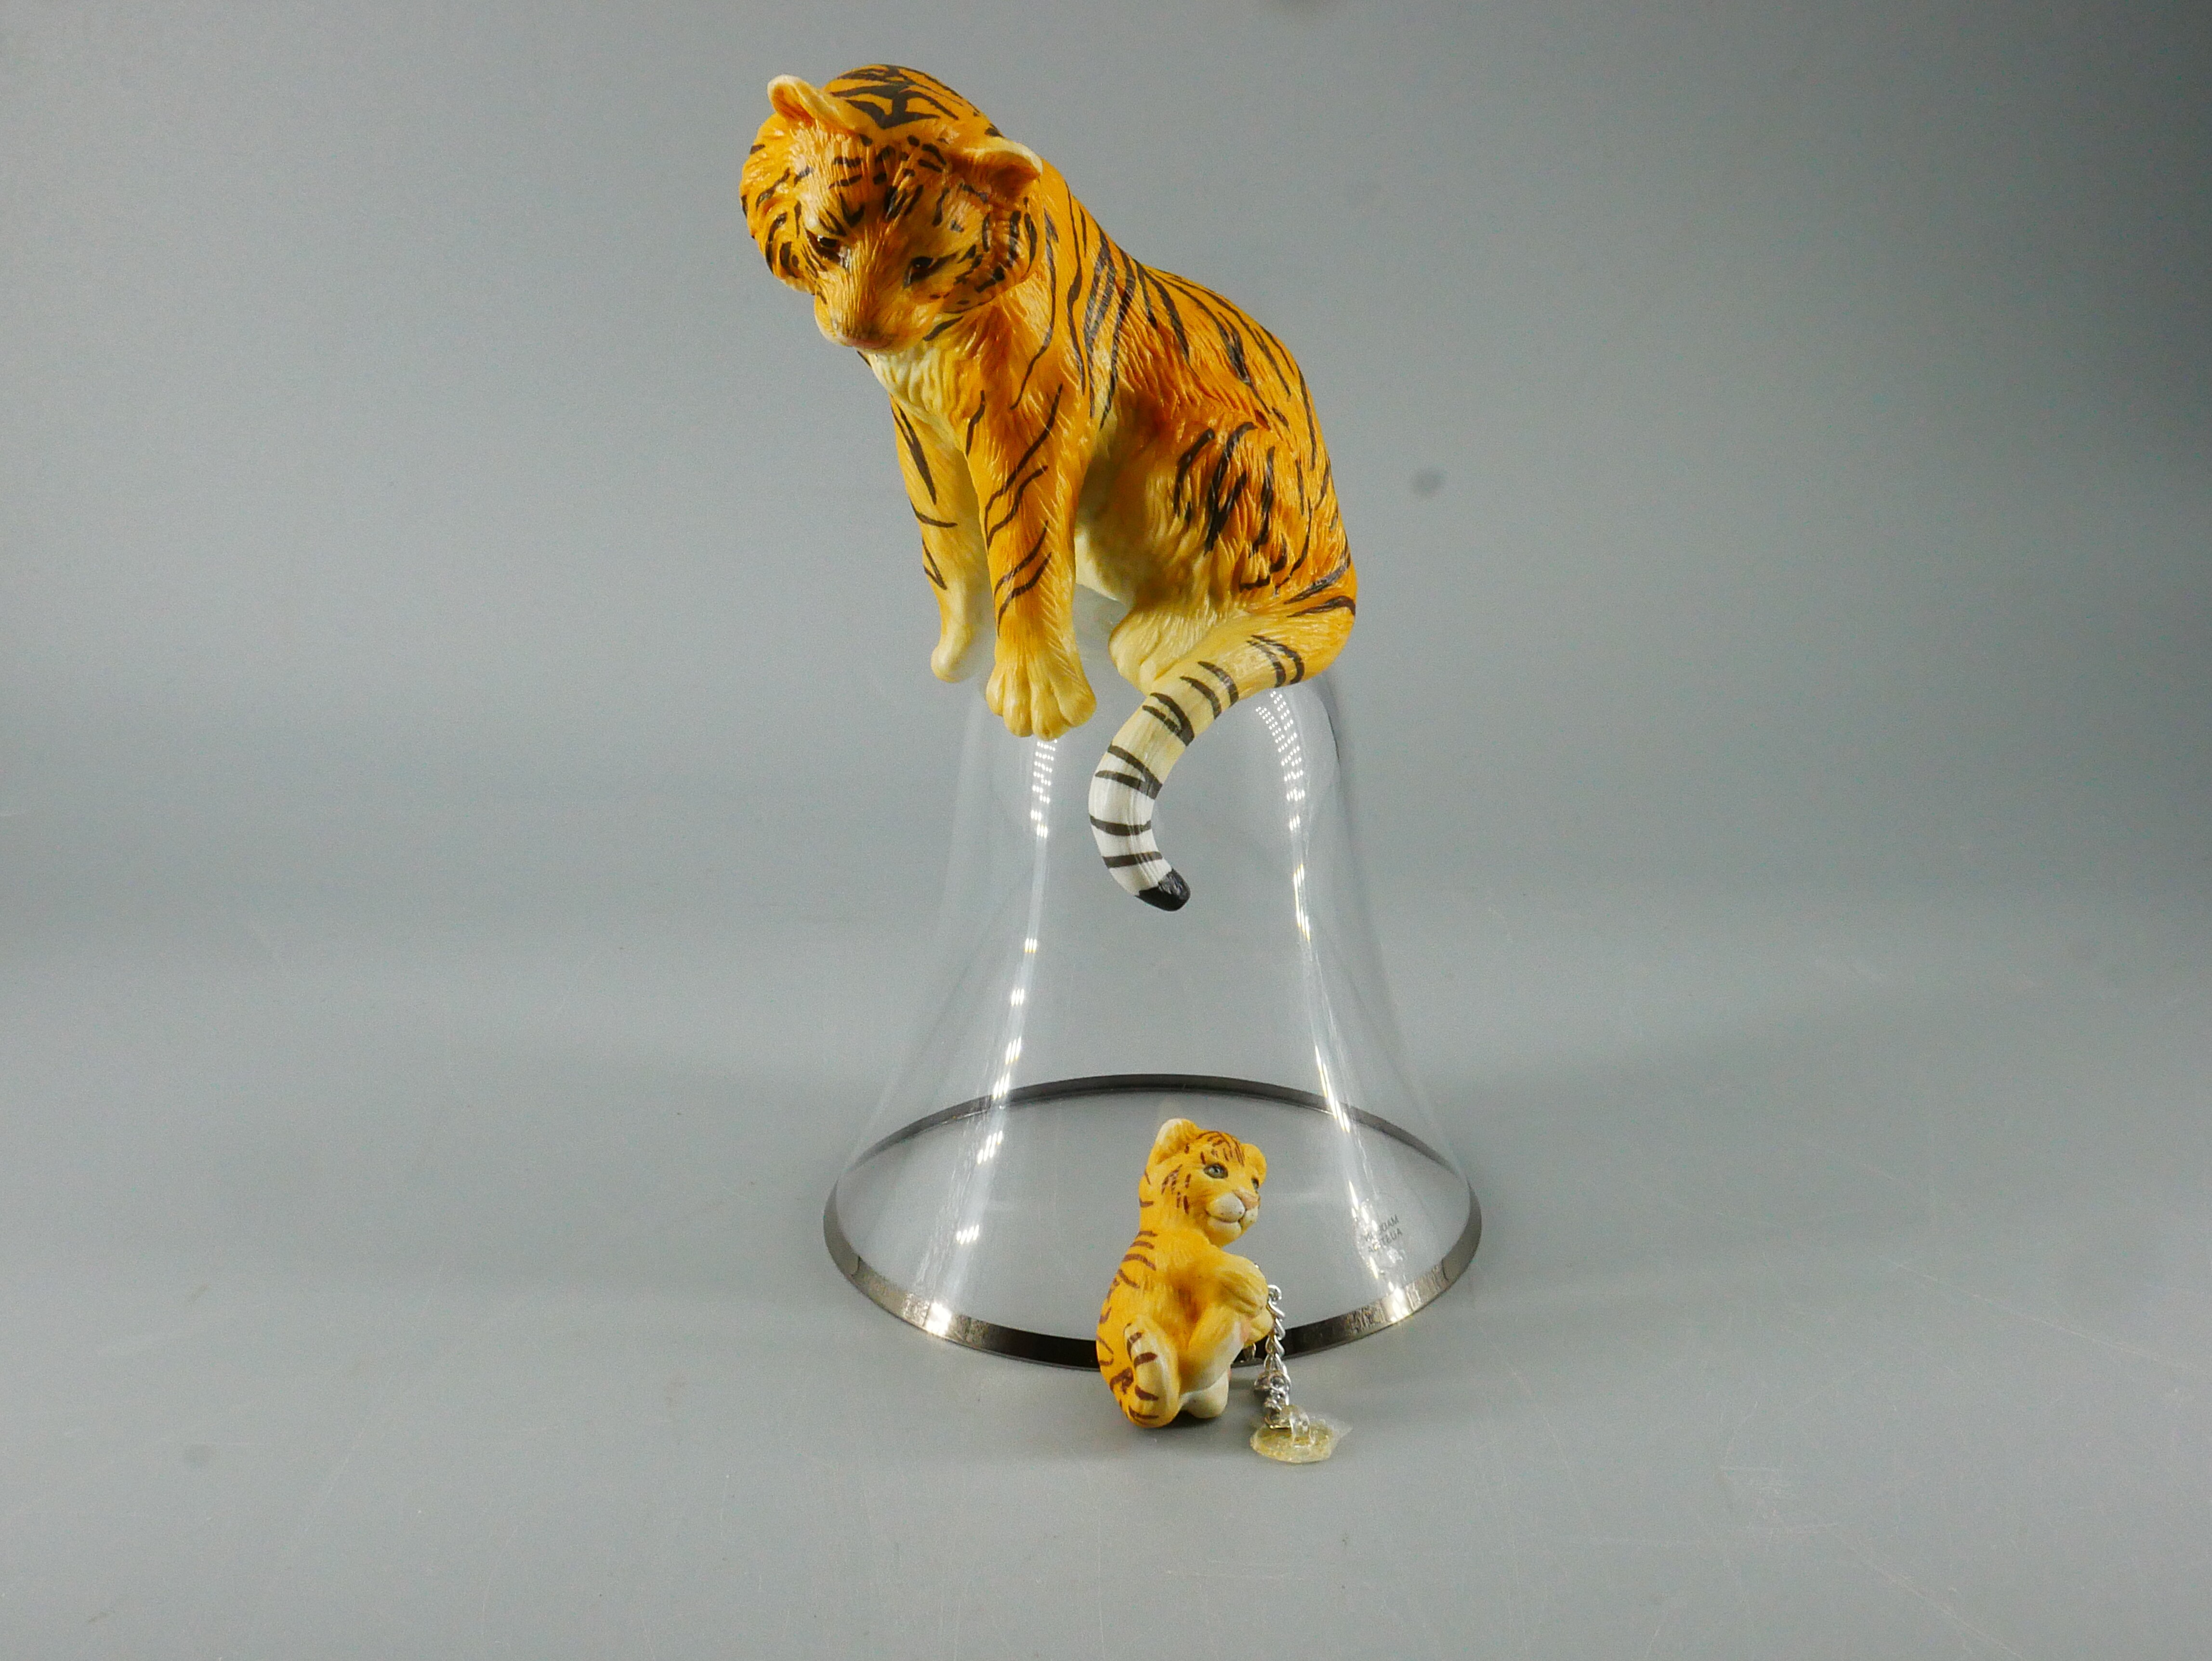 Gläserne Handglocke mit einem Griff in Gestalt eines Tigers (Westfälisches Glockenmuseum Gescher CC BY-NC-SA)